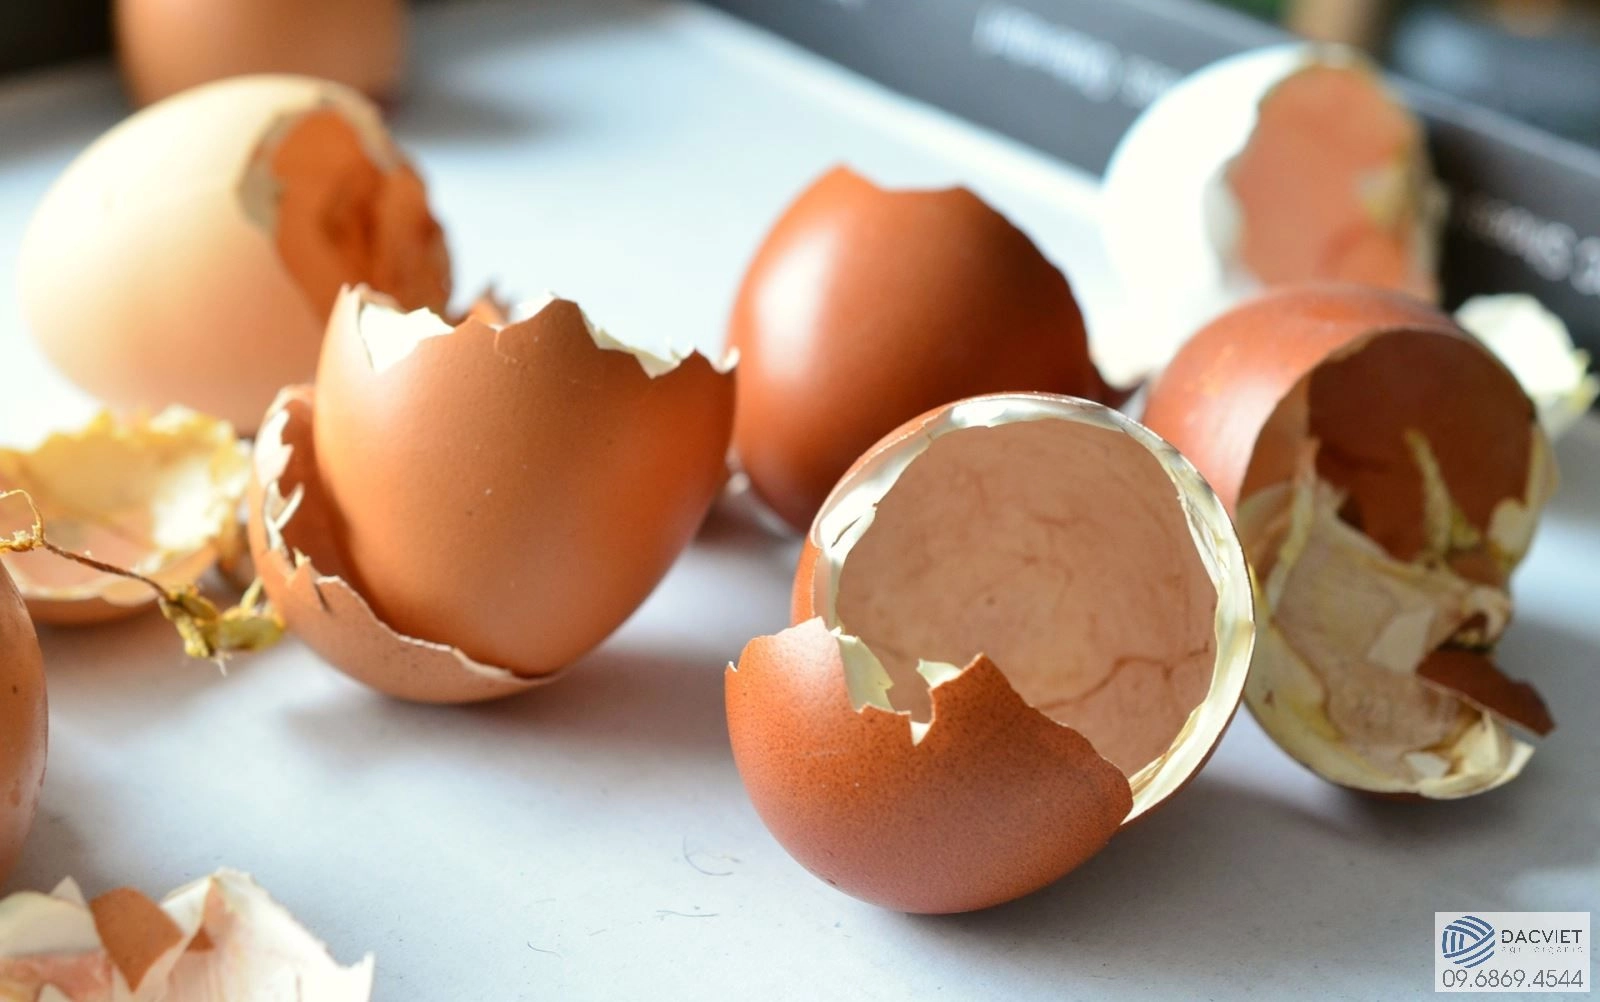 Cách làm phân hữu cơ sạch từ vỏ trứng bỏ đi cực kỳ đơn giản